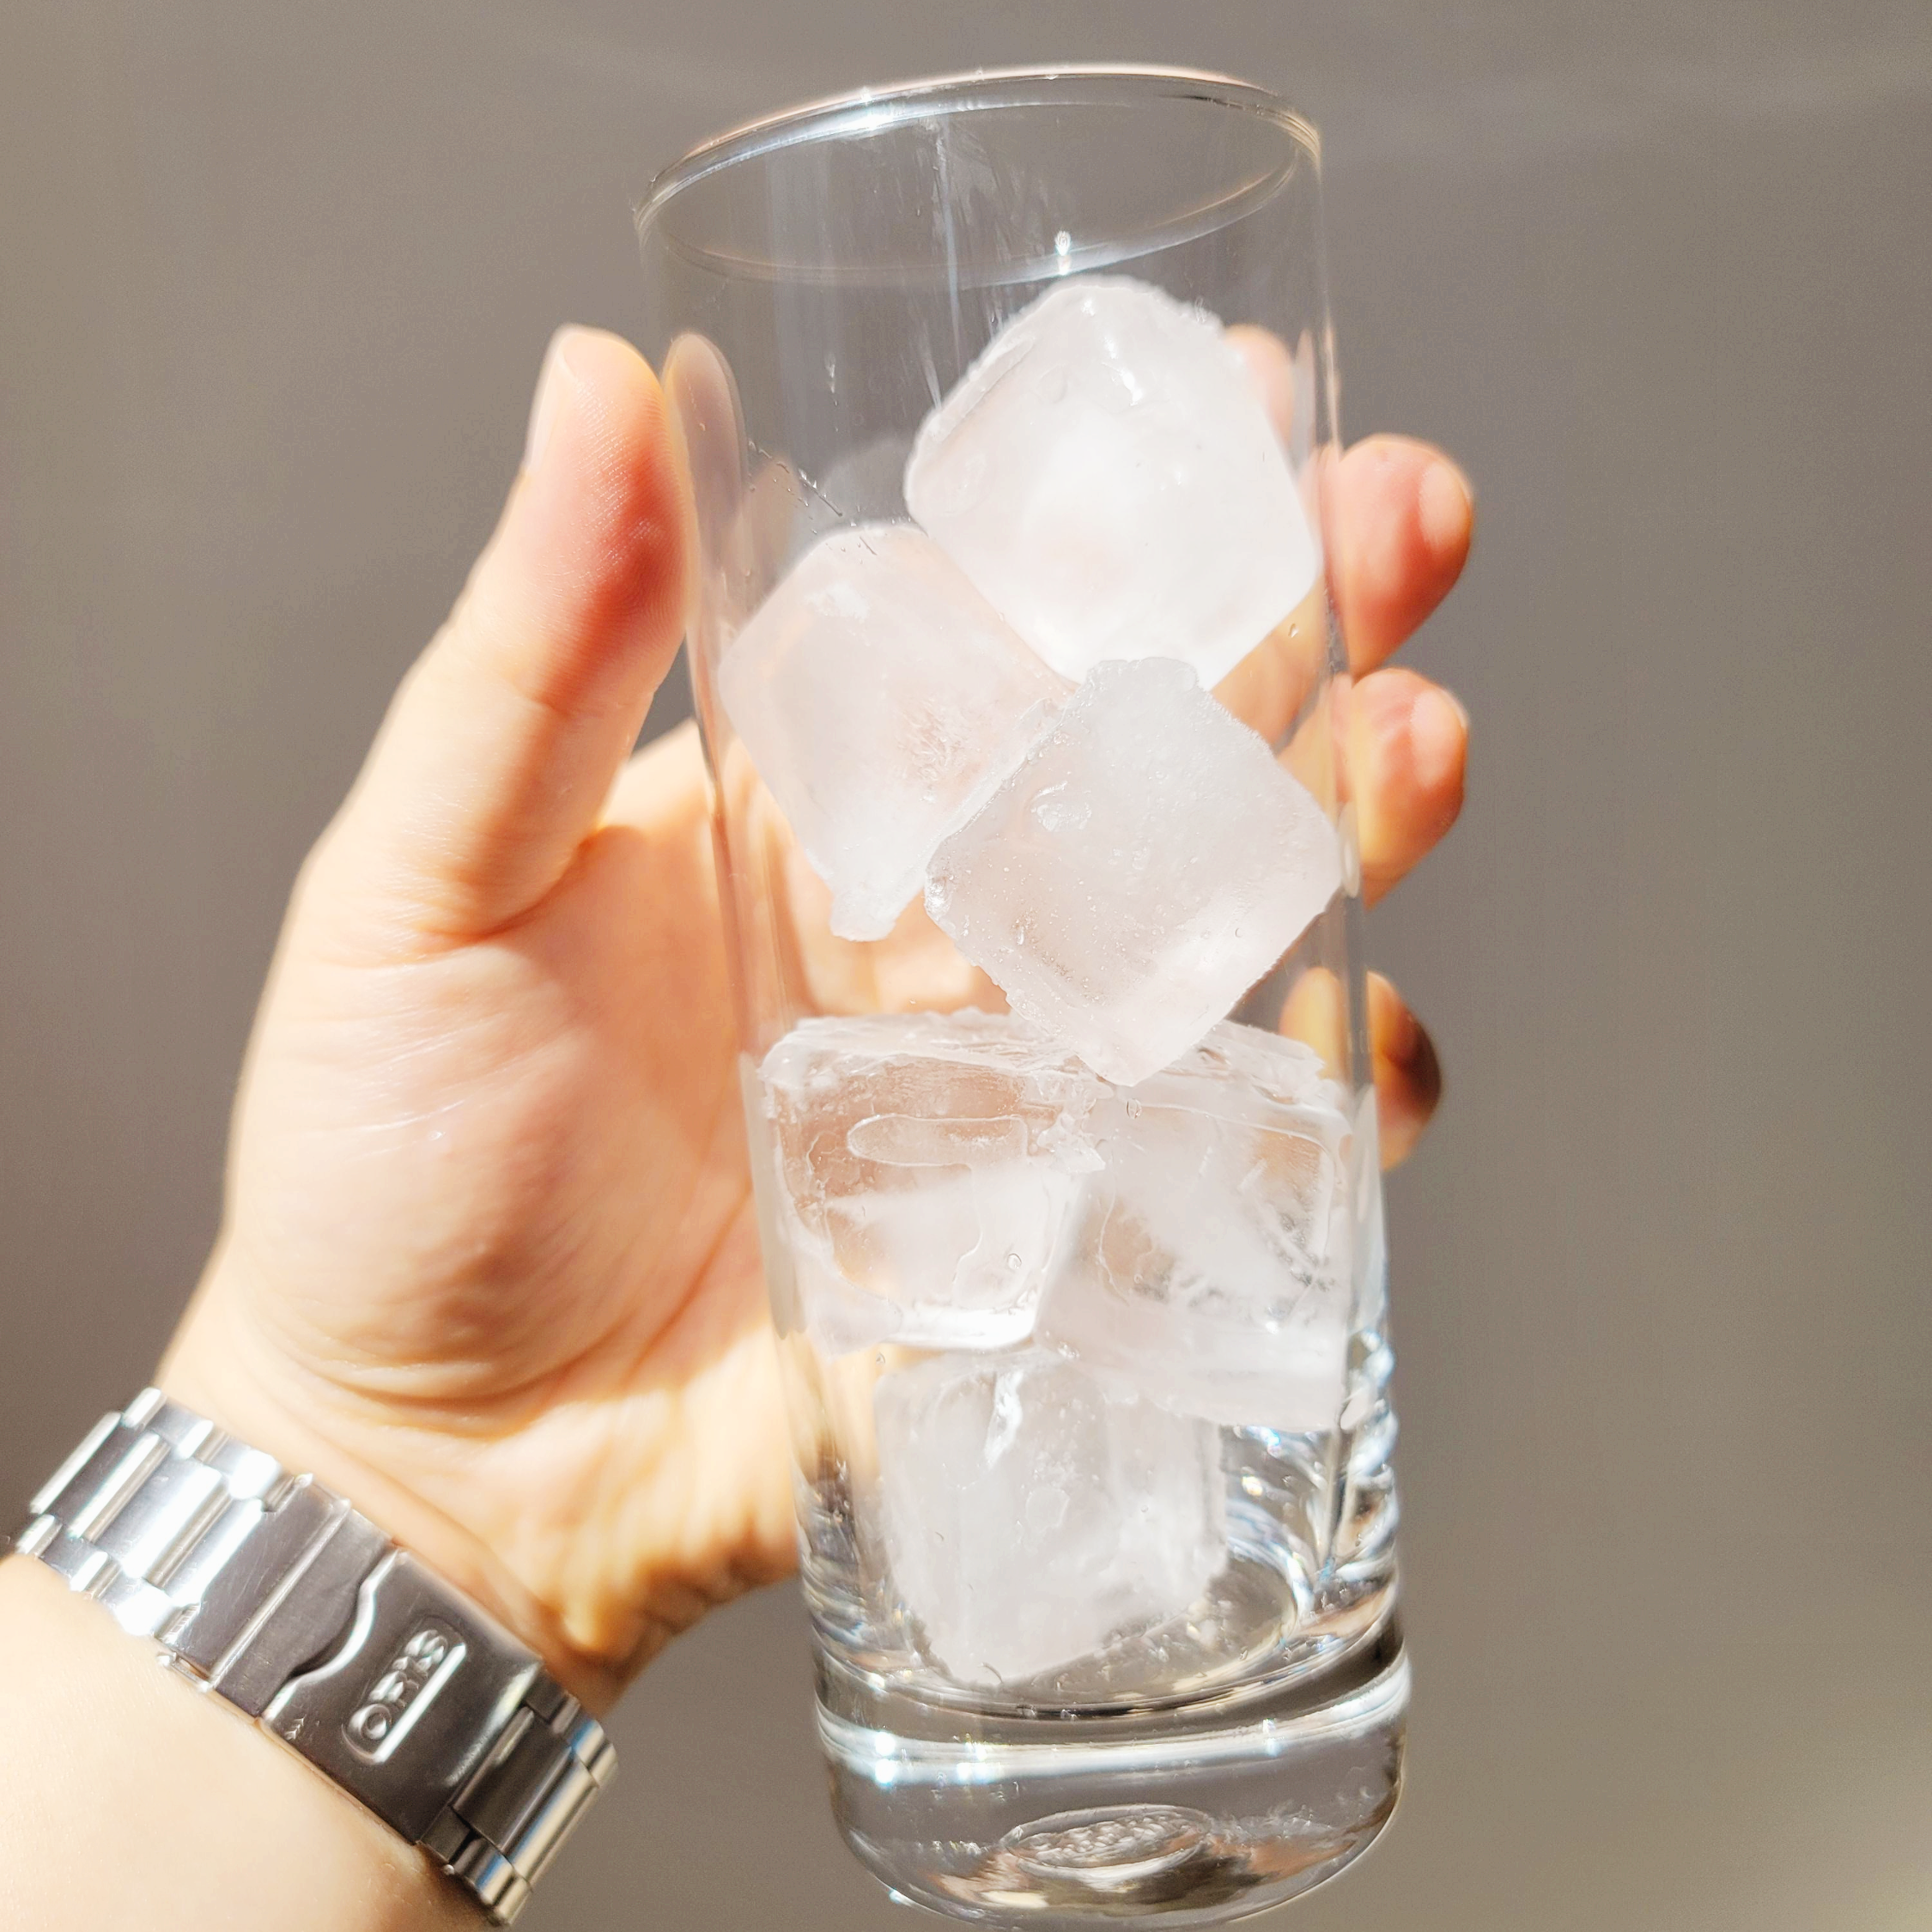 유리컵 안에 얼음 6조각이 들어있다